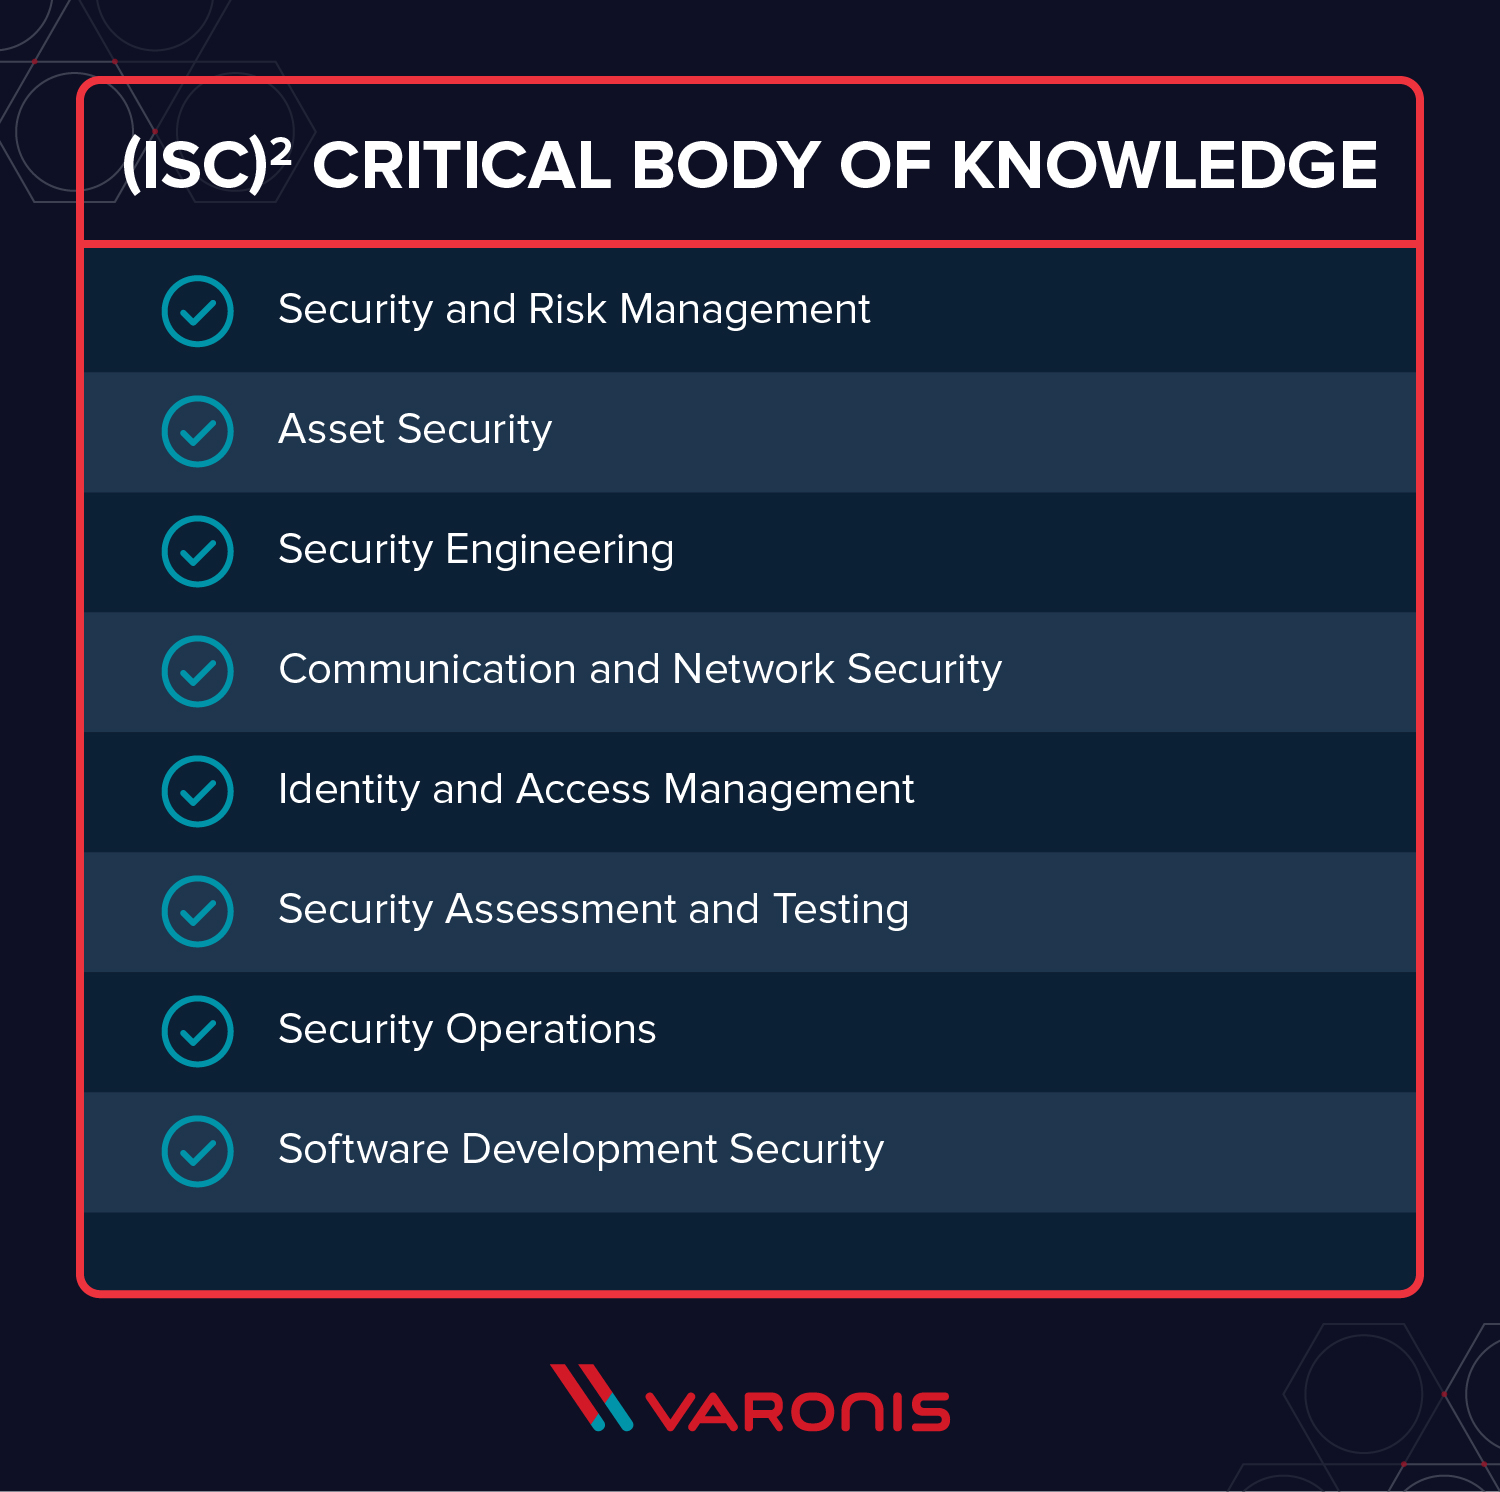 CISM ou CISSP - CISSP certification process checklist